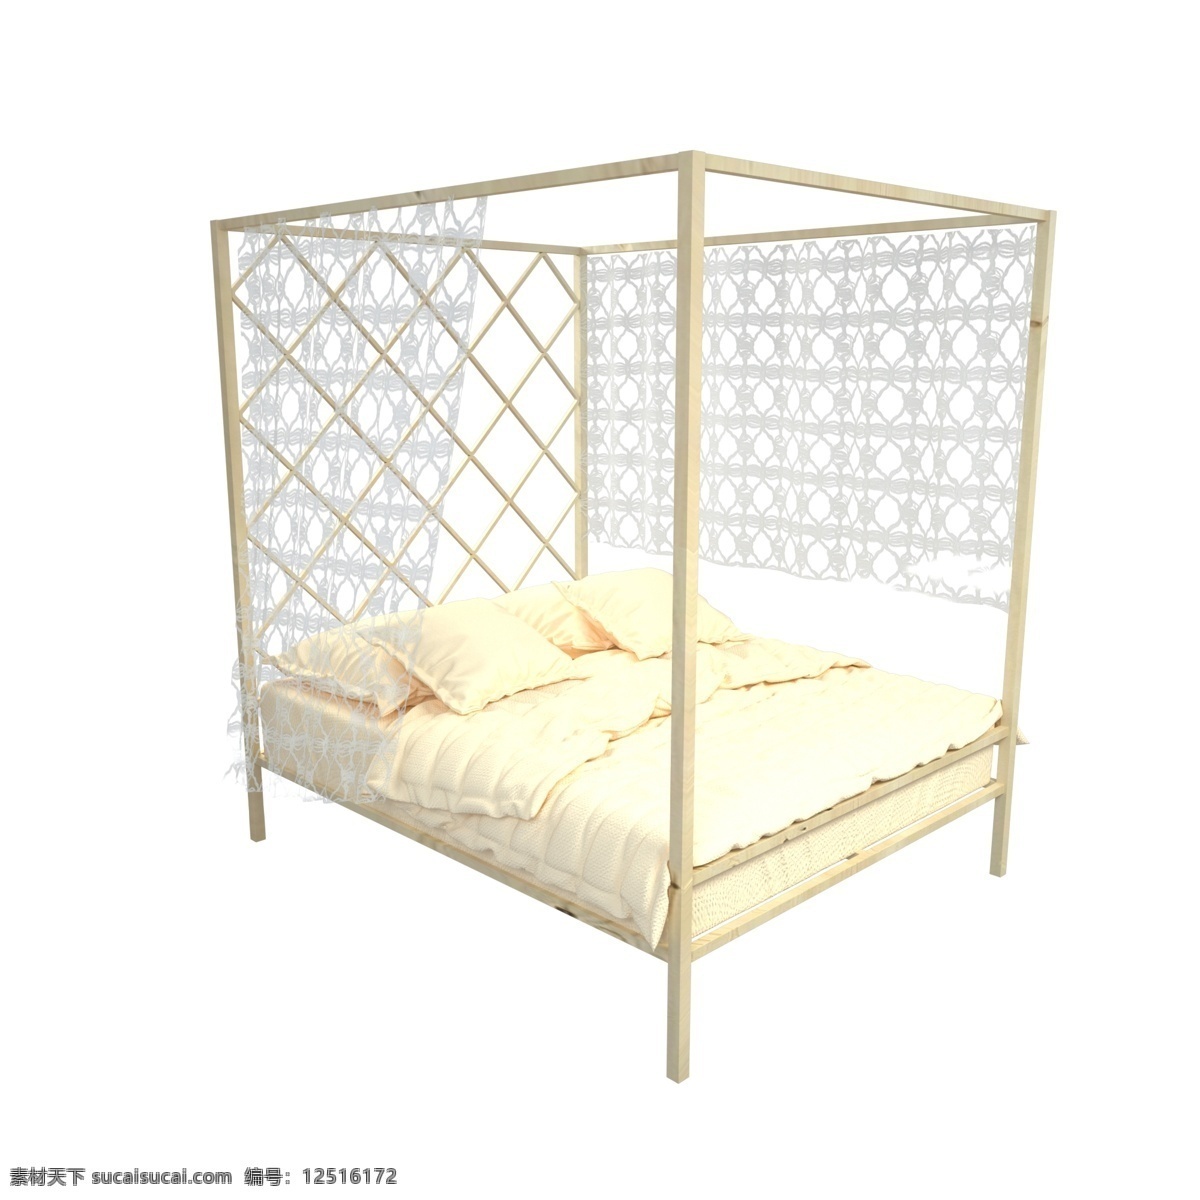 木质 暖色 双人 木床 c4d 双人床 写实 3d 布料 欧式床 单人床 家居 家具 家装 卧室家居 床单 床垫 橙色